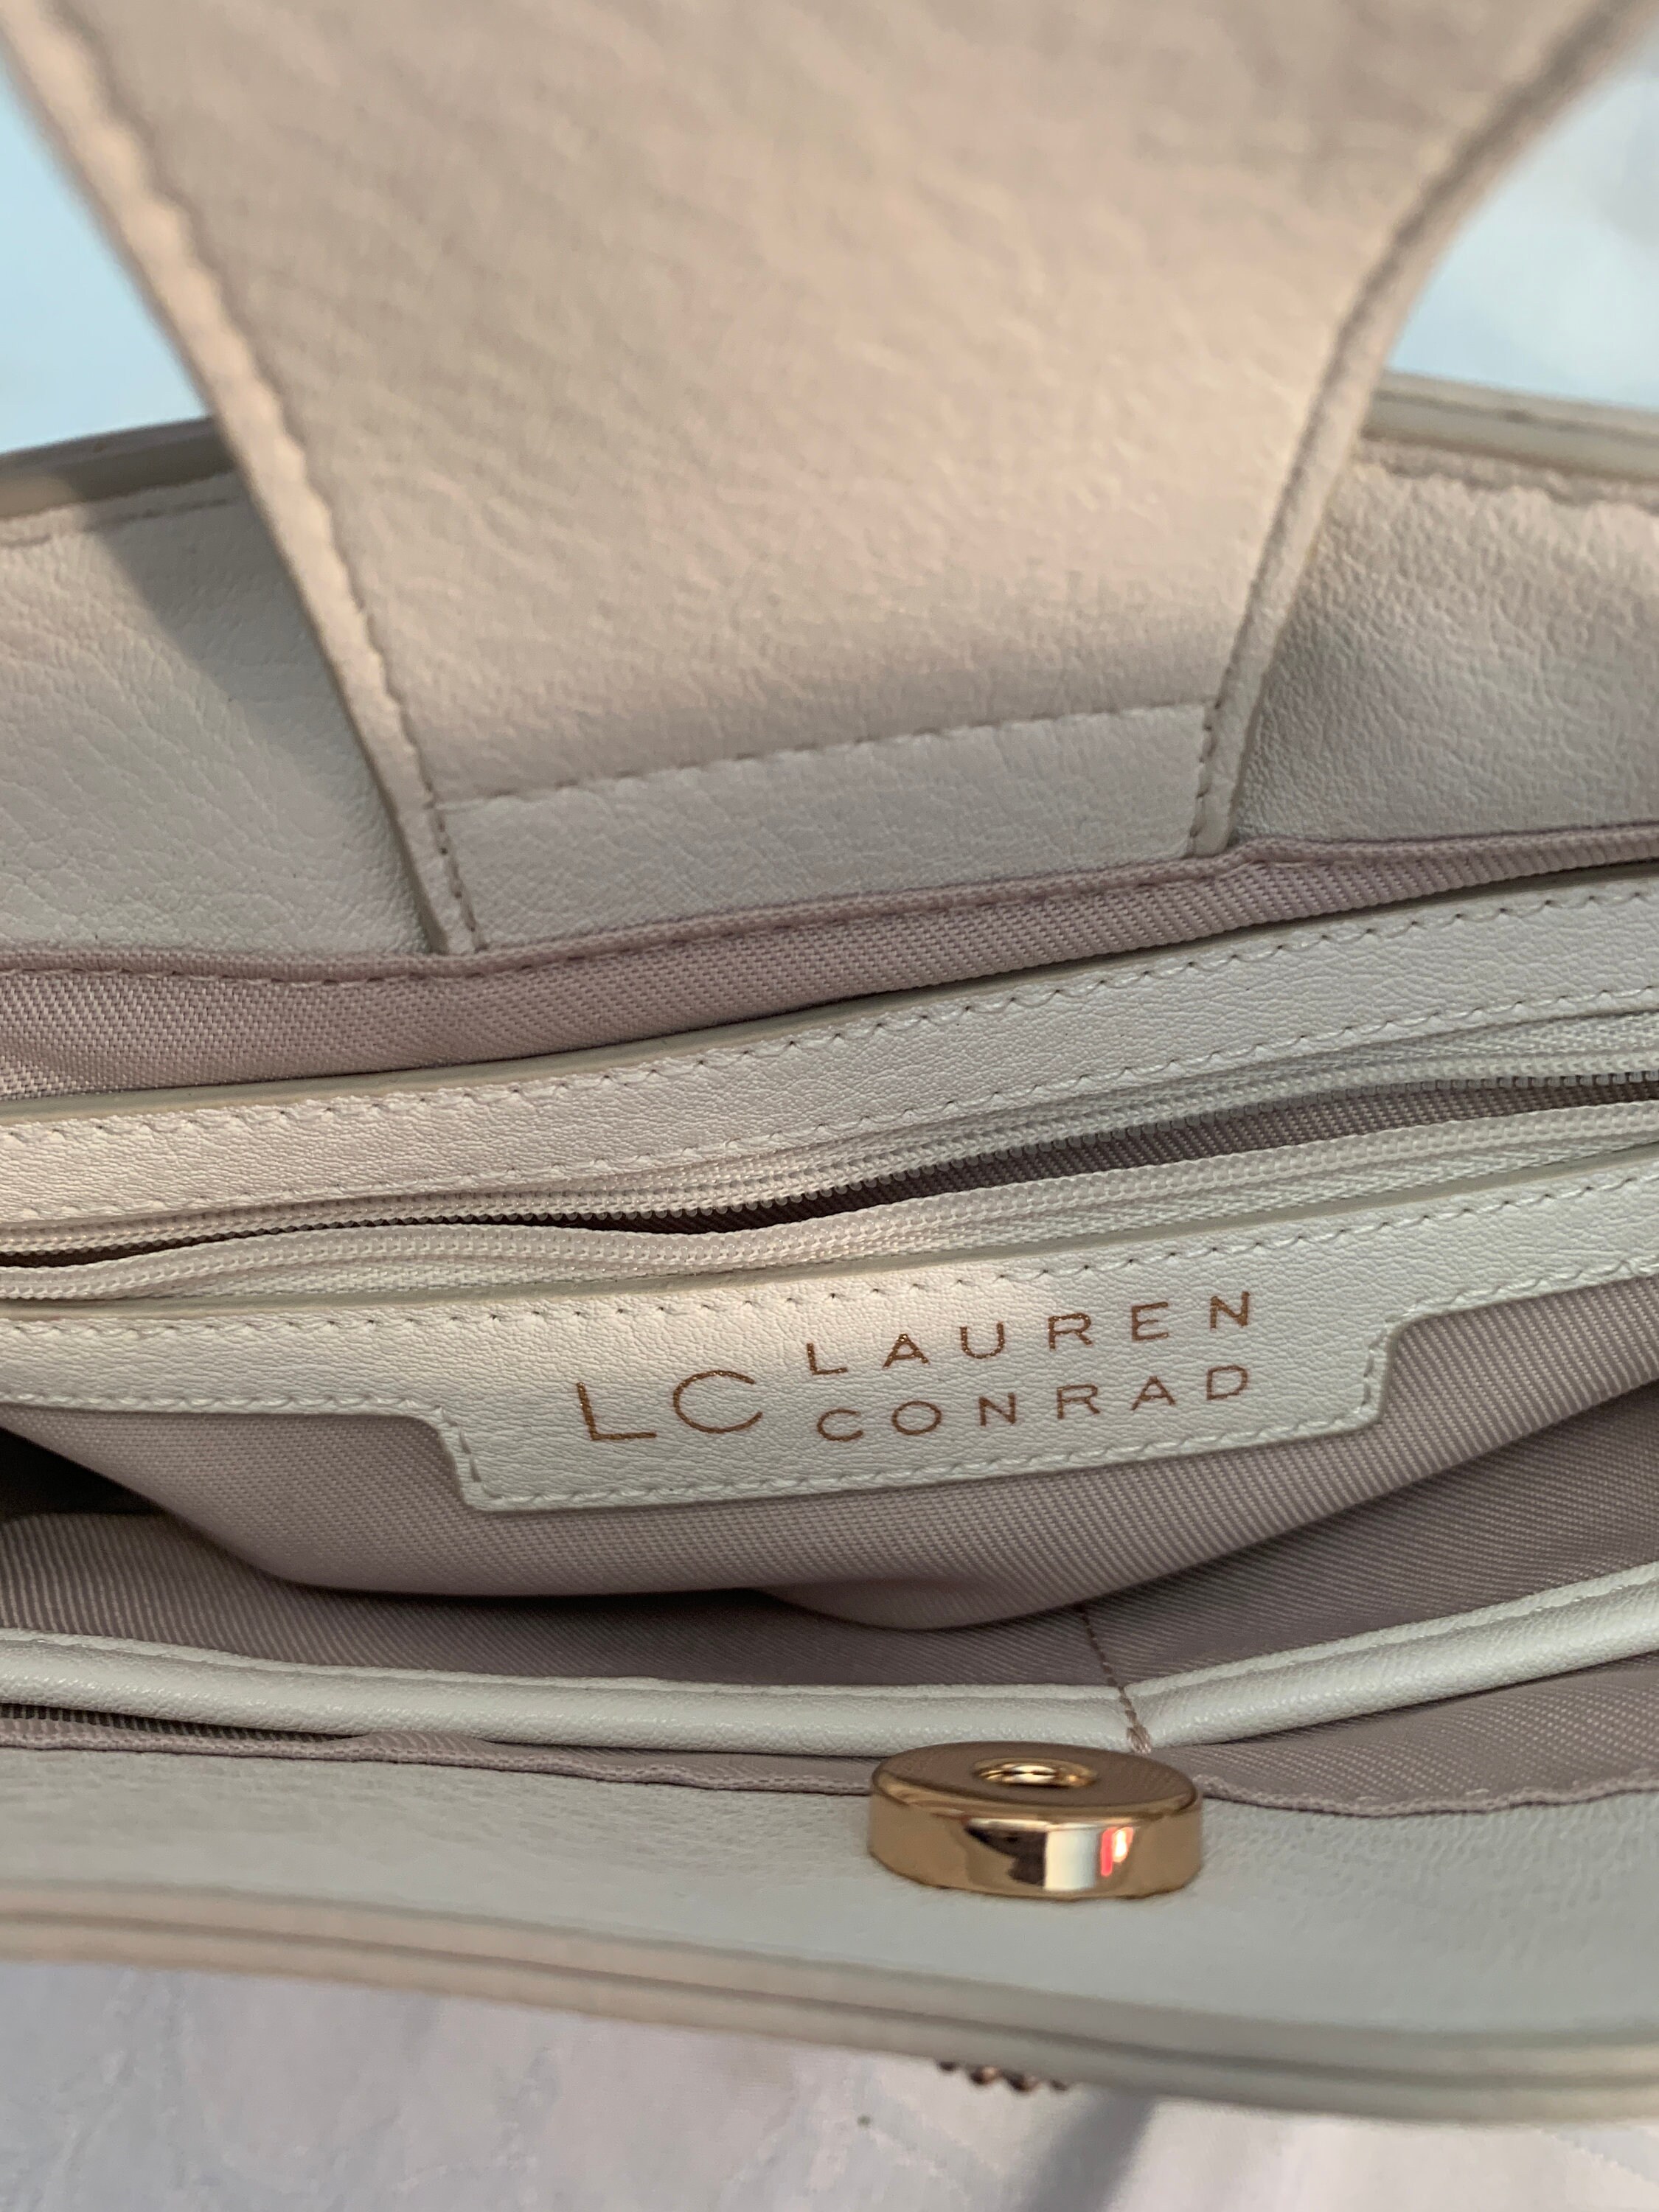 LC Lauren Conrad Candide Crossbody Bag | Purses and handbags, Chic  crossbody bag, Crossbody bag